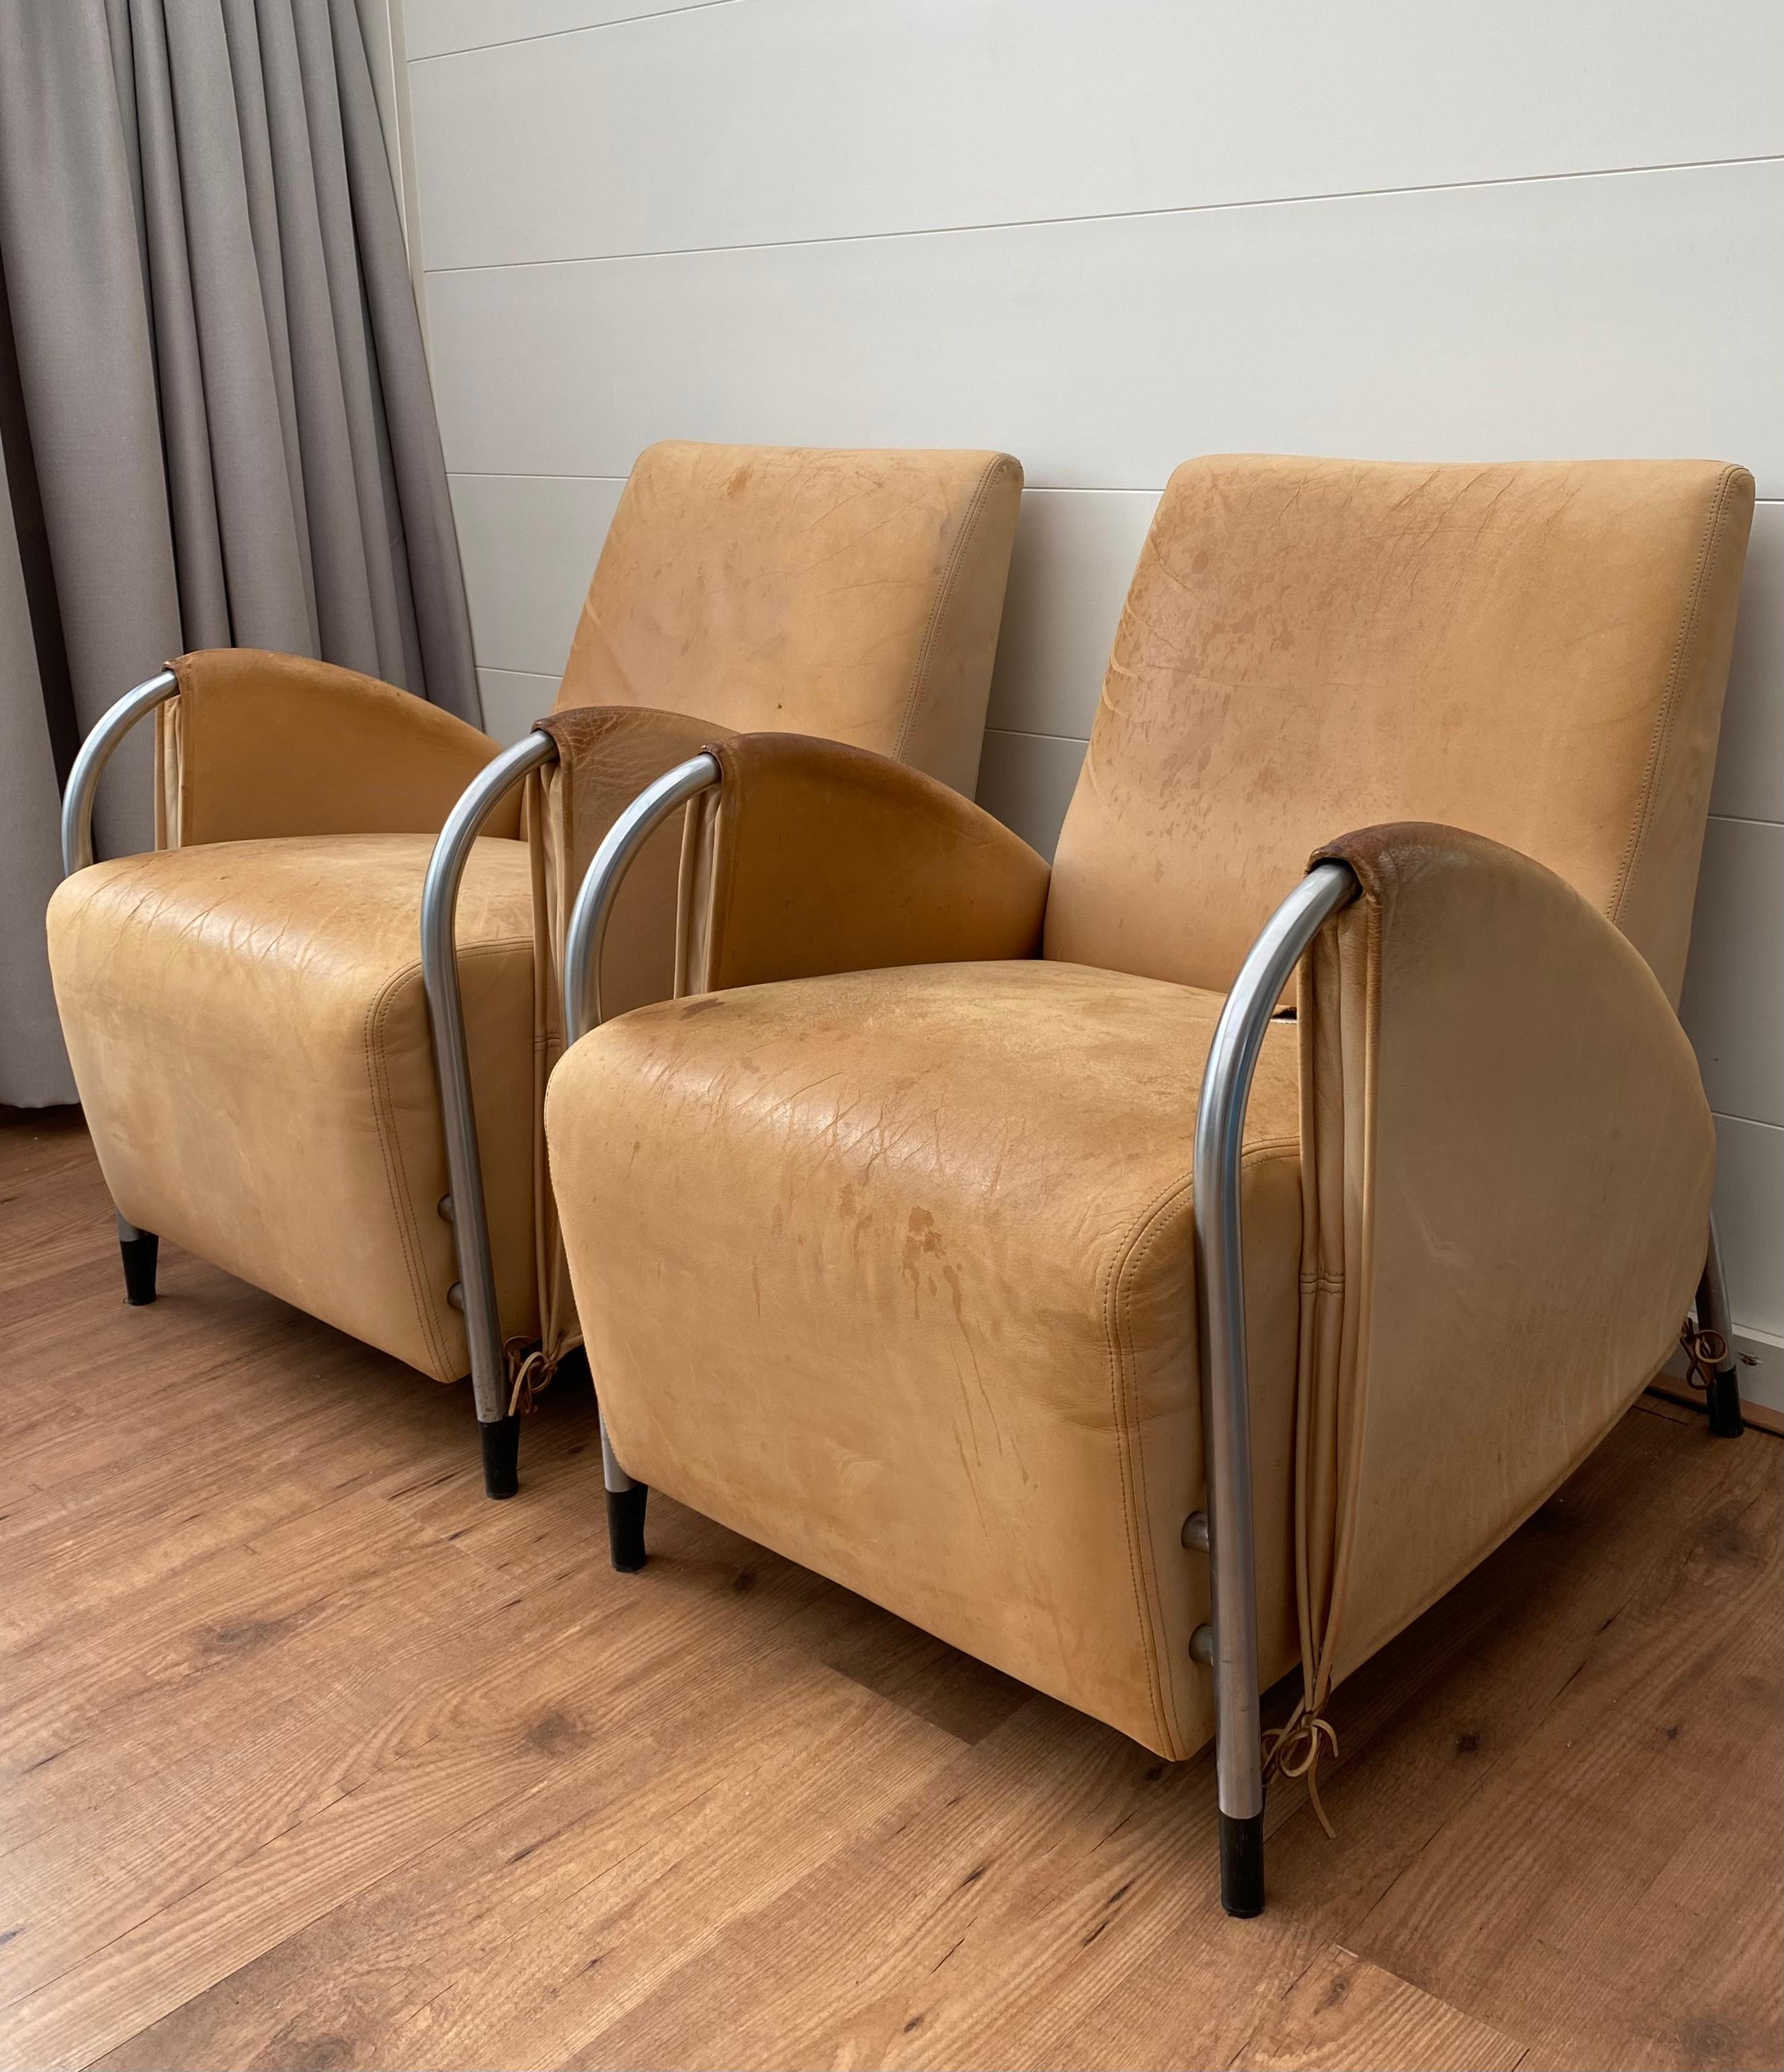 Ein Paar seltene und sehr begehrte Sessel, entworfen von Jan des Bouvrie für Gelderland. Die Stühle haben ein Rohrgestell mit schwarzen Akzenten und sind mit dickem Leder gepolstert. Beide Stühle müssen neu gepolstert werden, das Leder weist Flecken